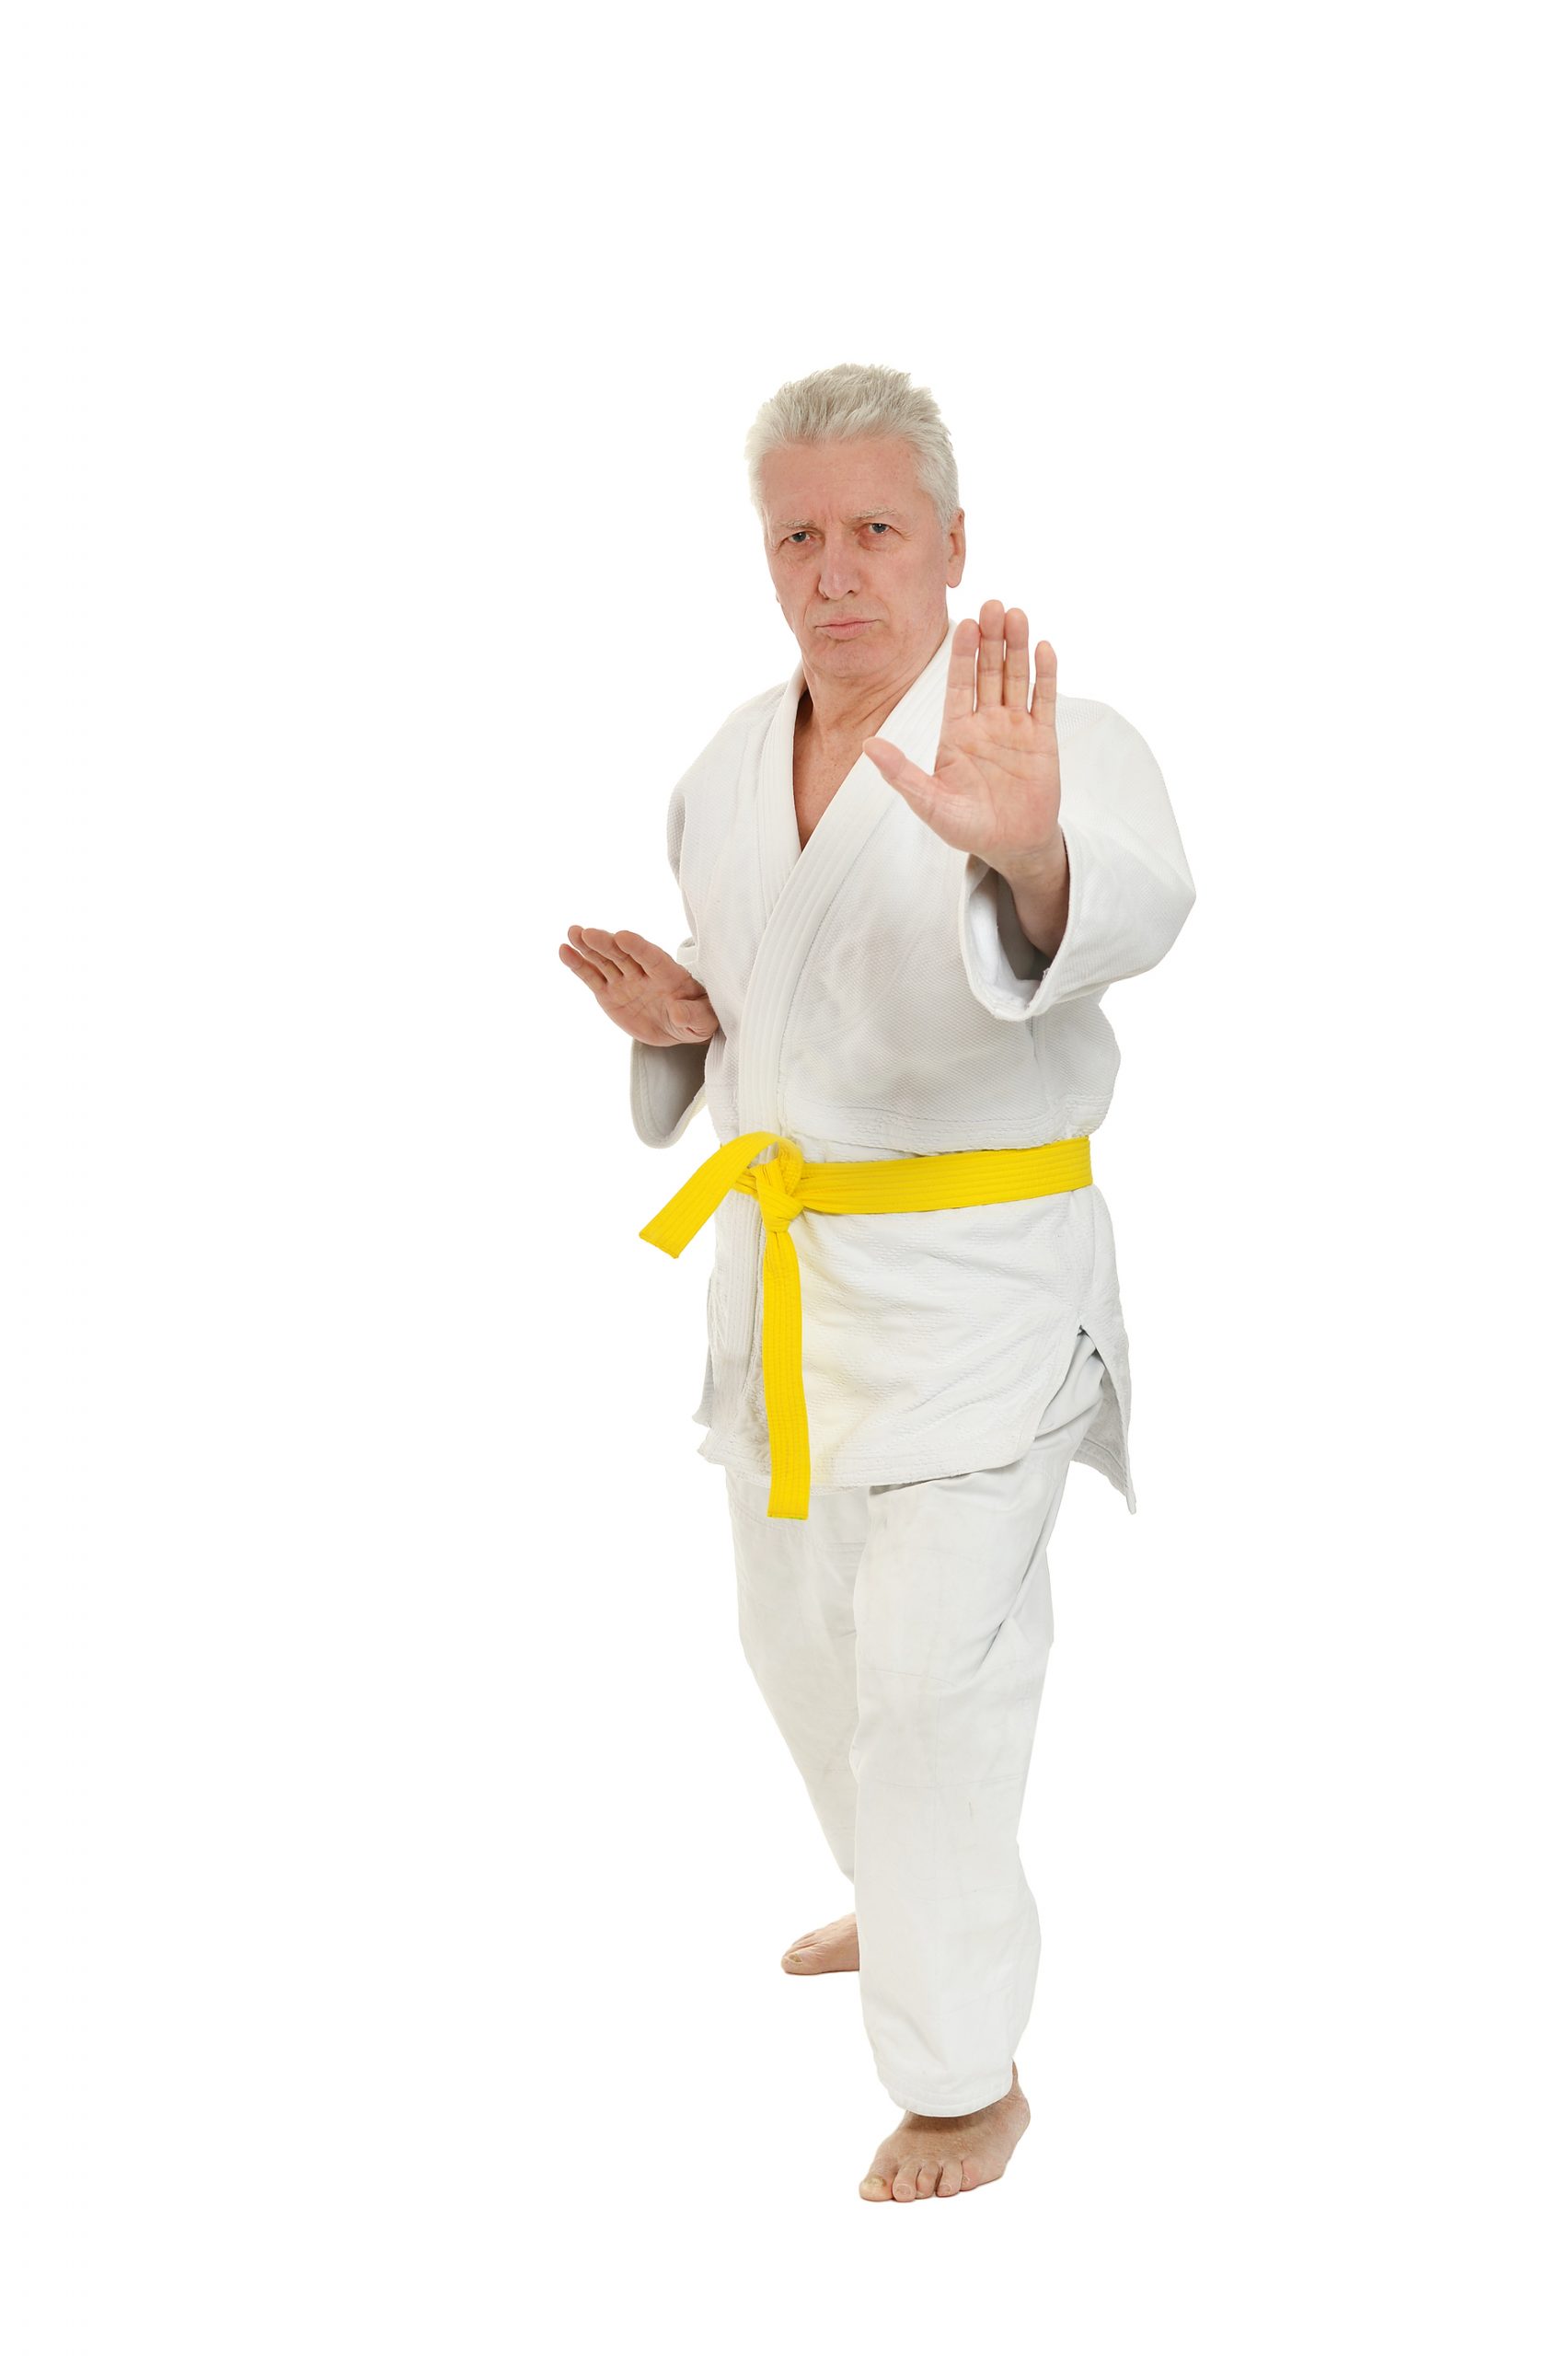 Premium Photo | Karate in a pose